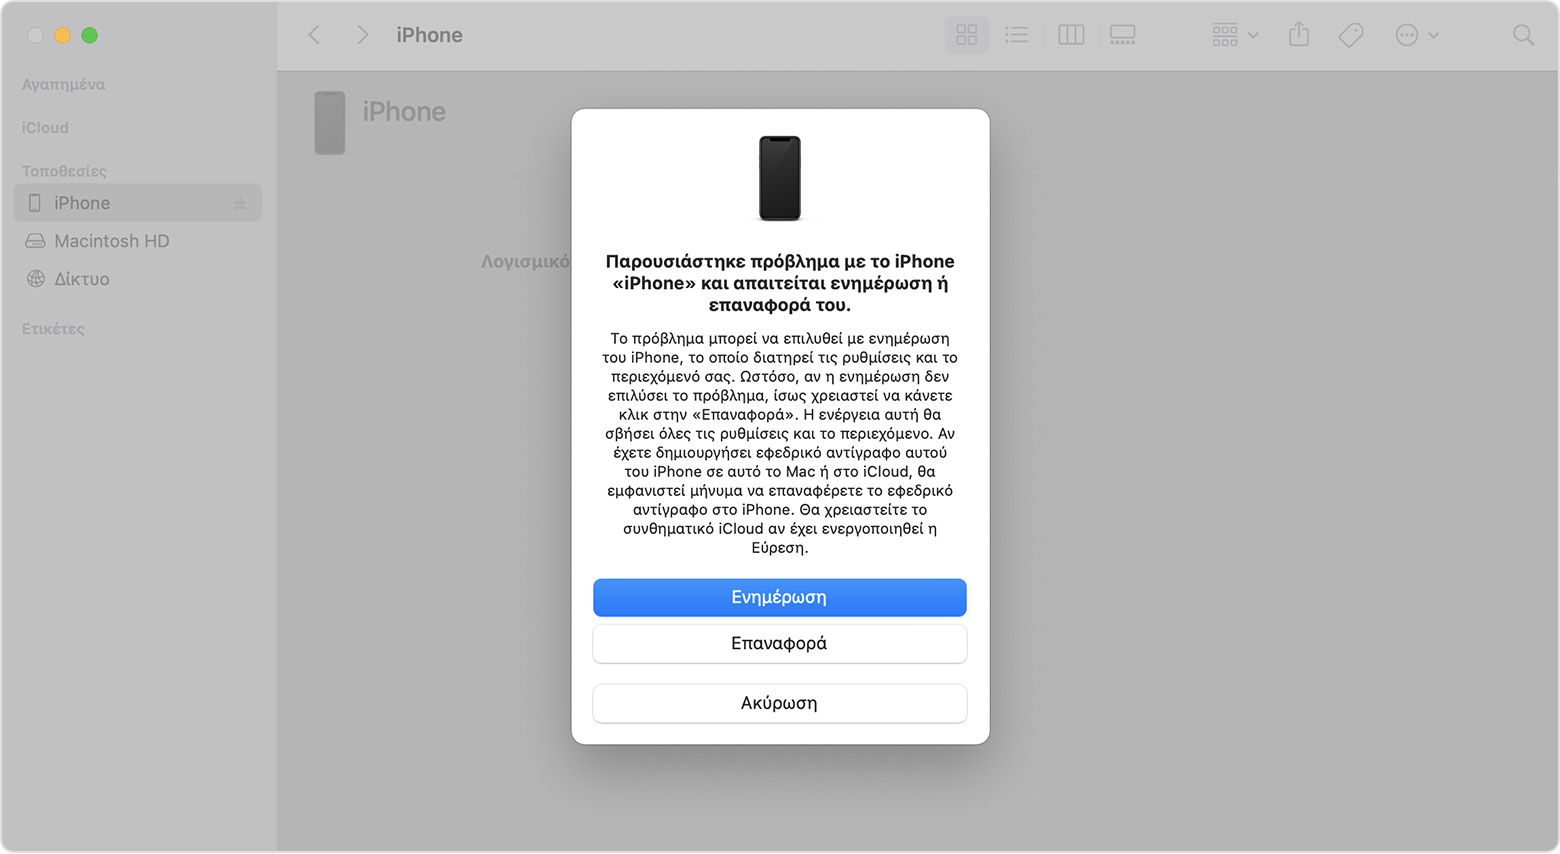 Παράθυρο του Finder που δείχνει μια προτροπή με επιλογή για ενημέρωση ή επαναφορά του iPhone. Είναι επιλεγμένη η «Ενημέρωση».